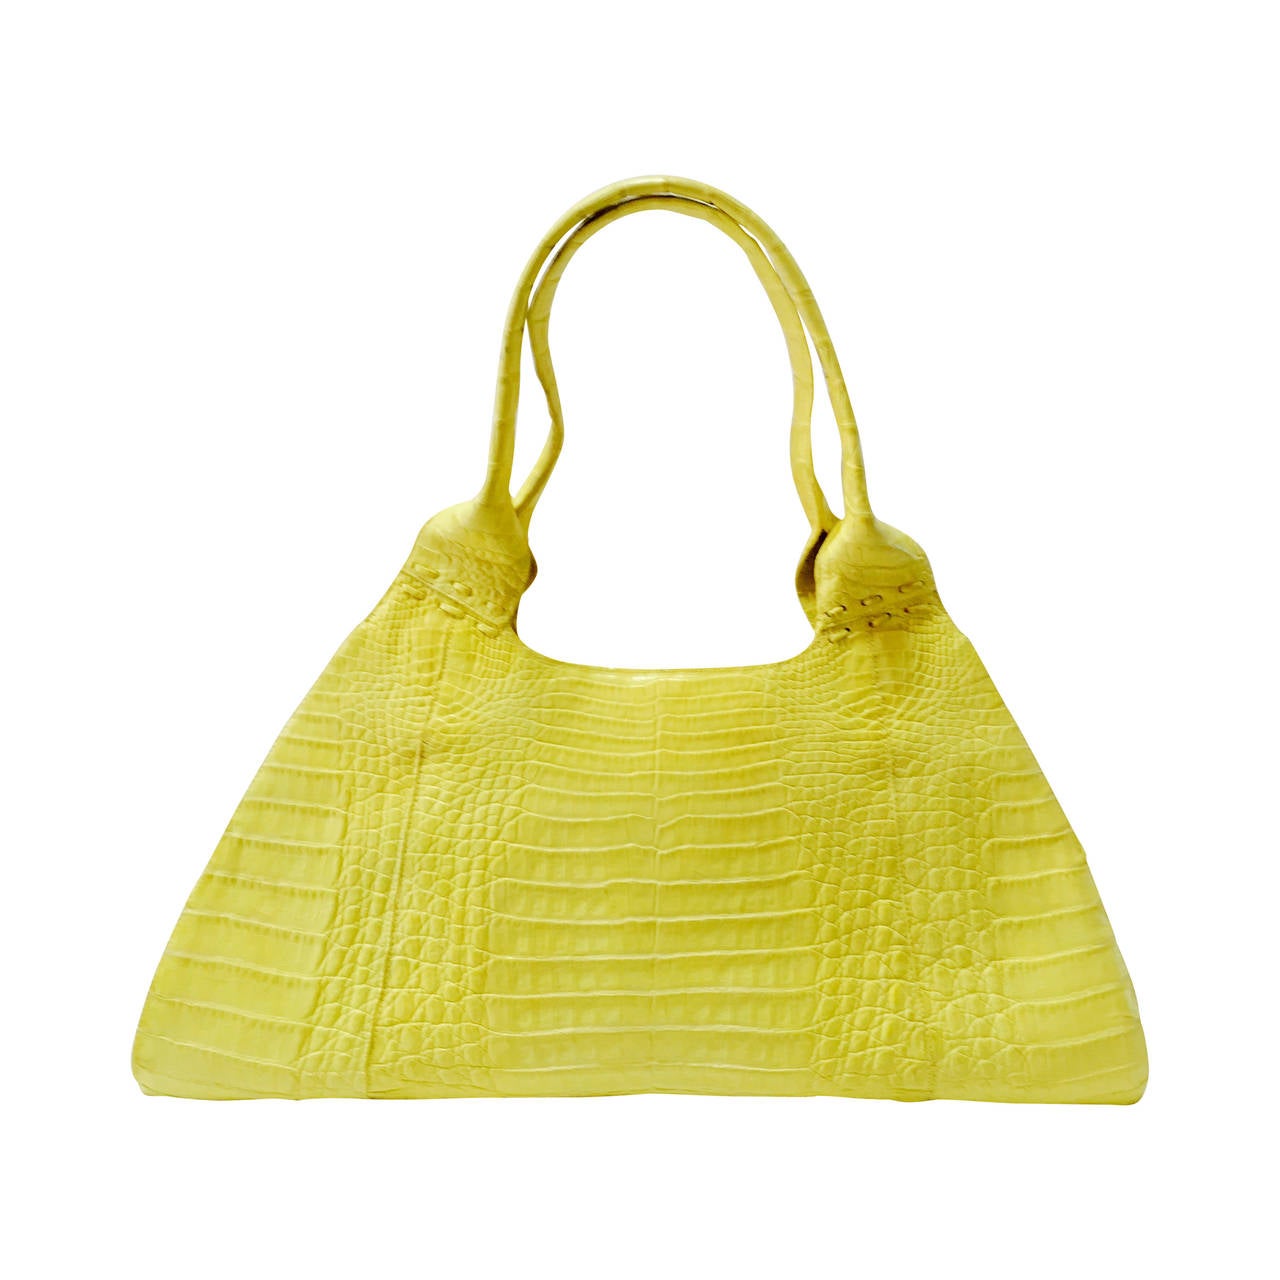 Exquisite Nancy Gonzalez Citrus Yellow Crocodile Shoulder Bag For Sale